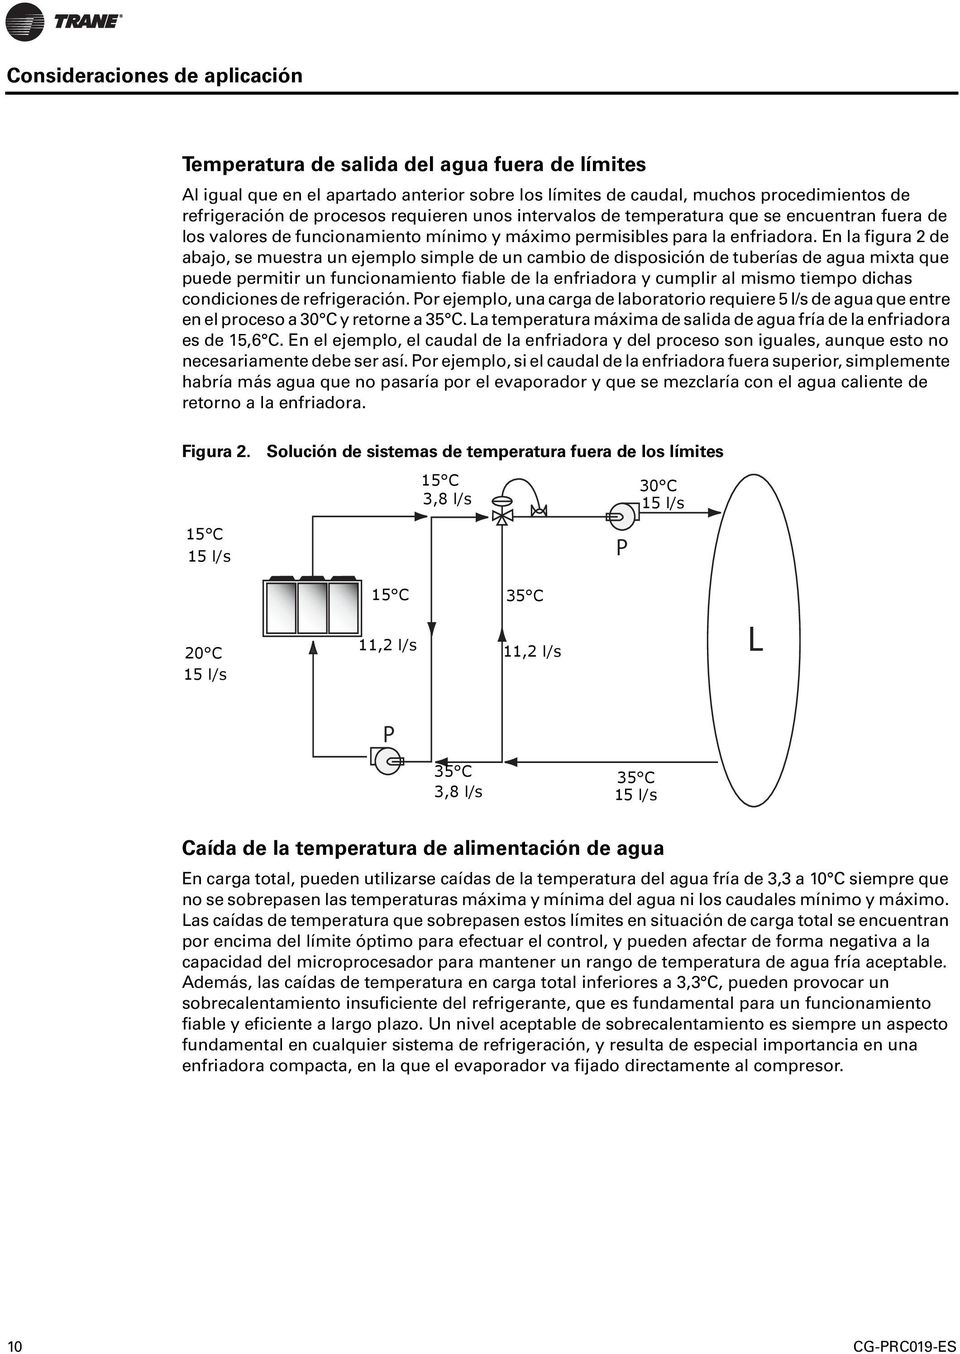 En la figura 2 de abajo, se muestra un ejemplo simple de un cambio de disposición de tuberías de agua mixta que puede permitir un funcionamiento fiable de la enfriadora y cumplir al mismo tiempo